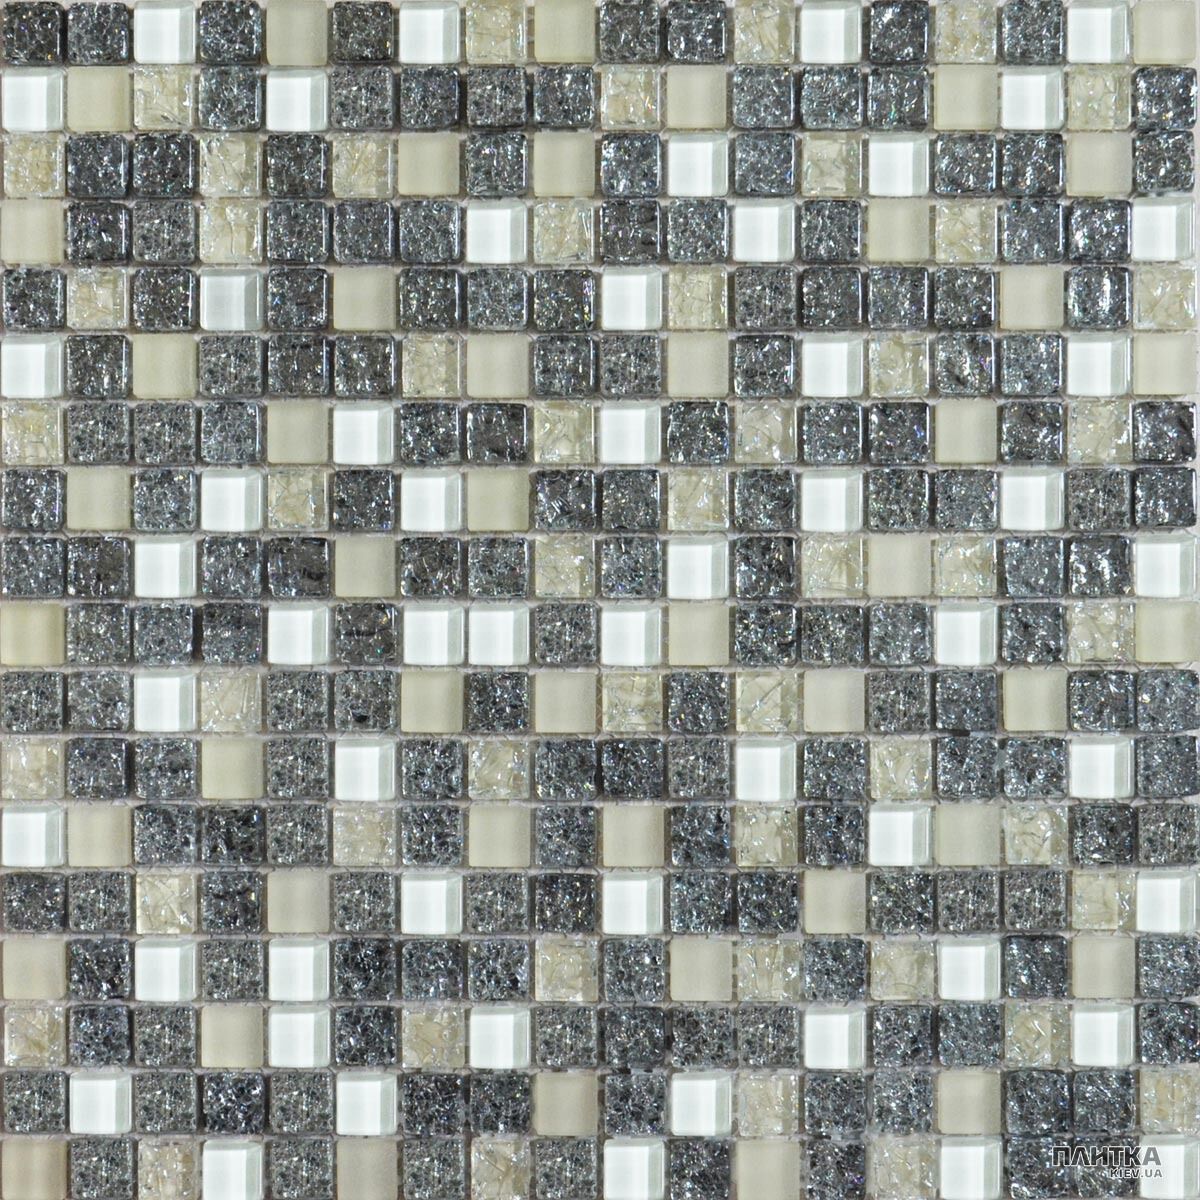 Мозаика Grand Kerama 2100 микс платина колотая-белый-охра белый,платиновый,кремовый